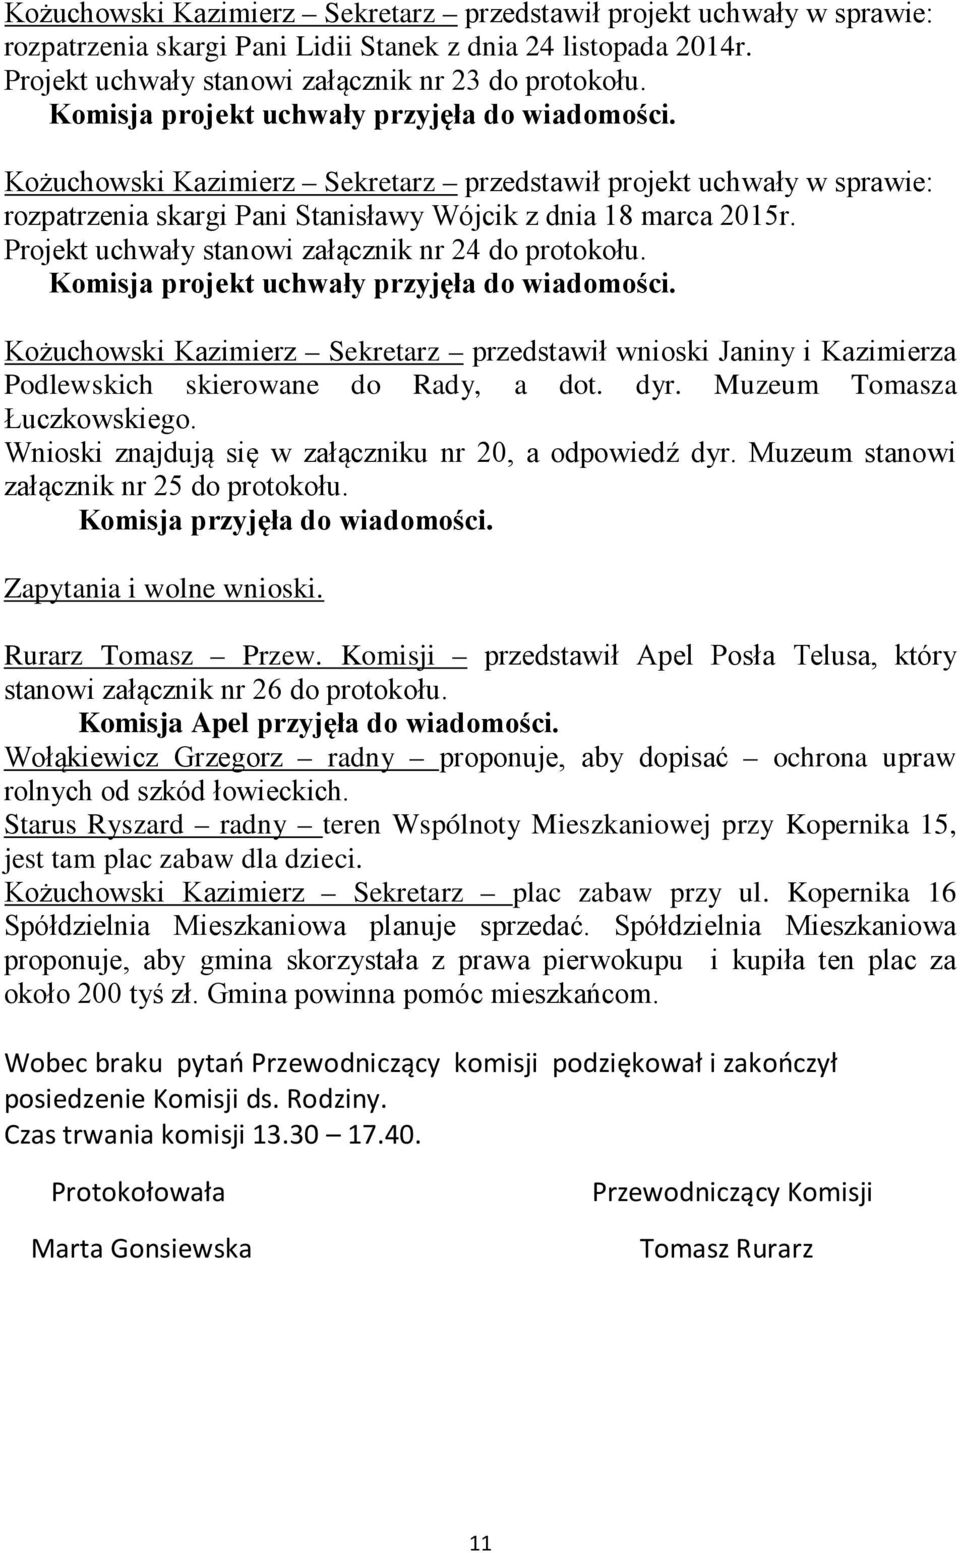 Kożuchowski Kazimierz Sekretarz przedstawił wnioski Janiny i Kazimierza Podlewskich skierowane do Rady, a dot. dyr. Muzeum Tomasza Łuczkowskiego.